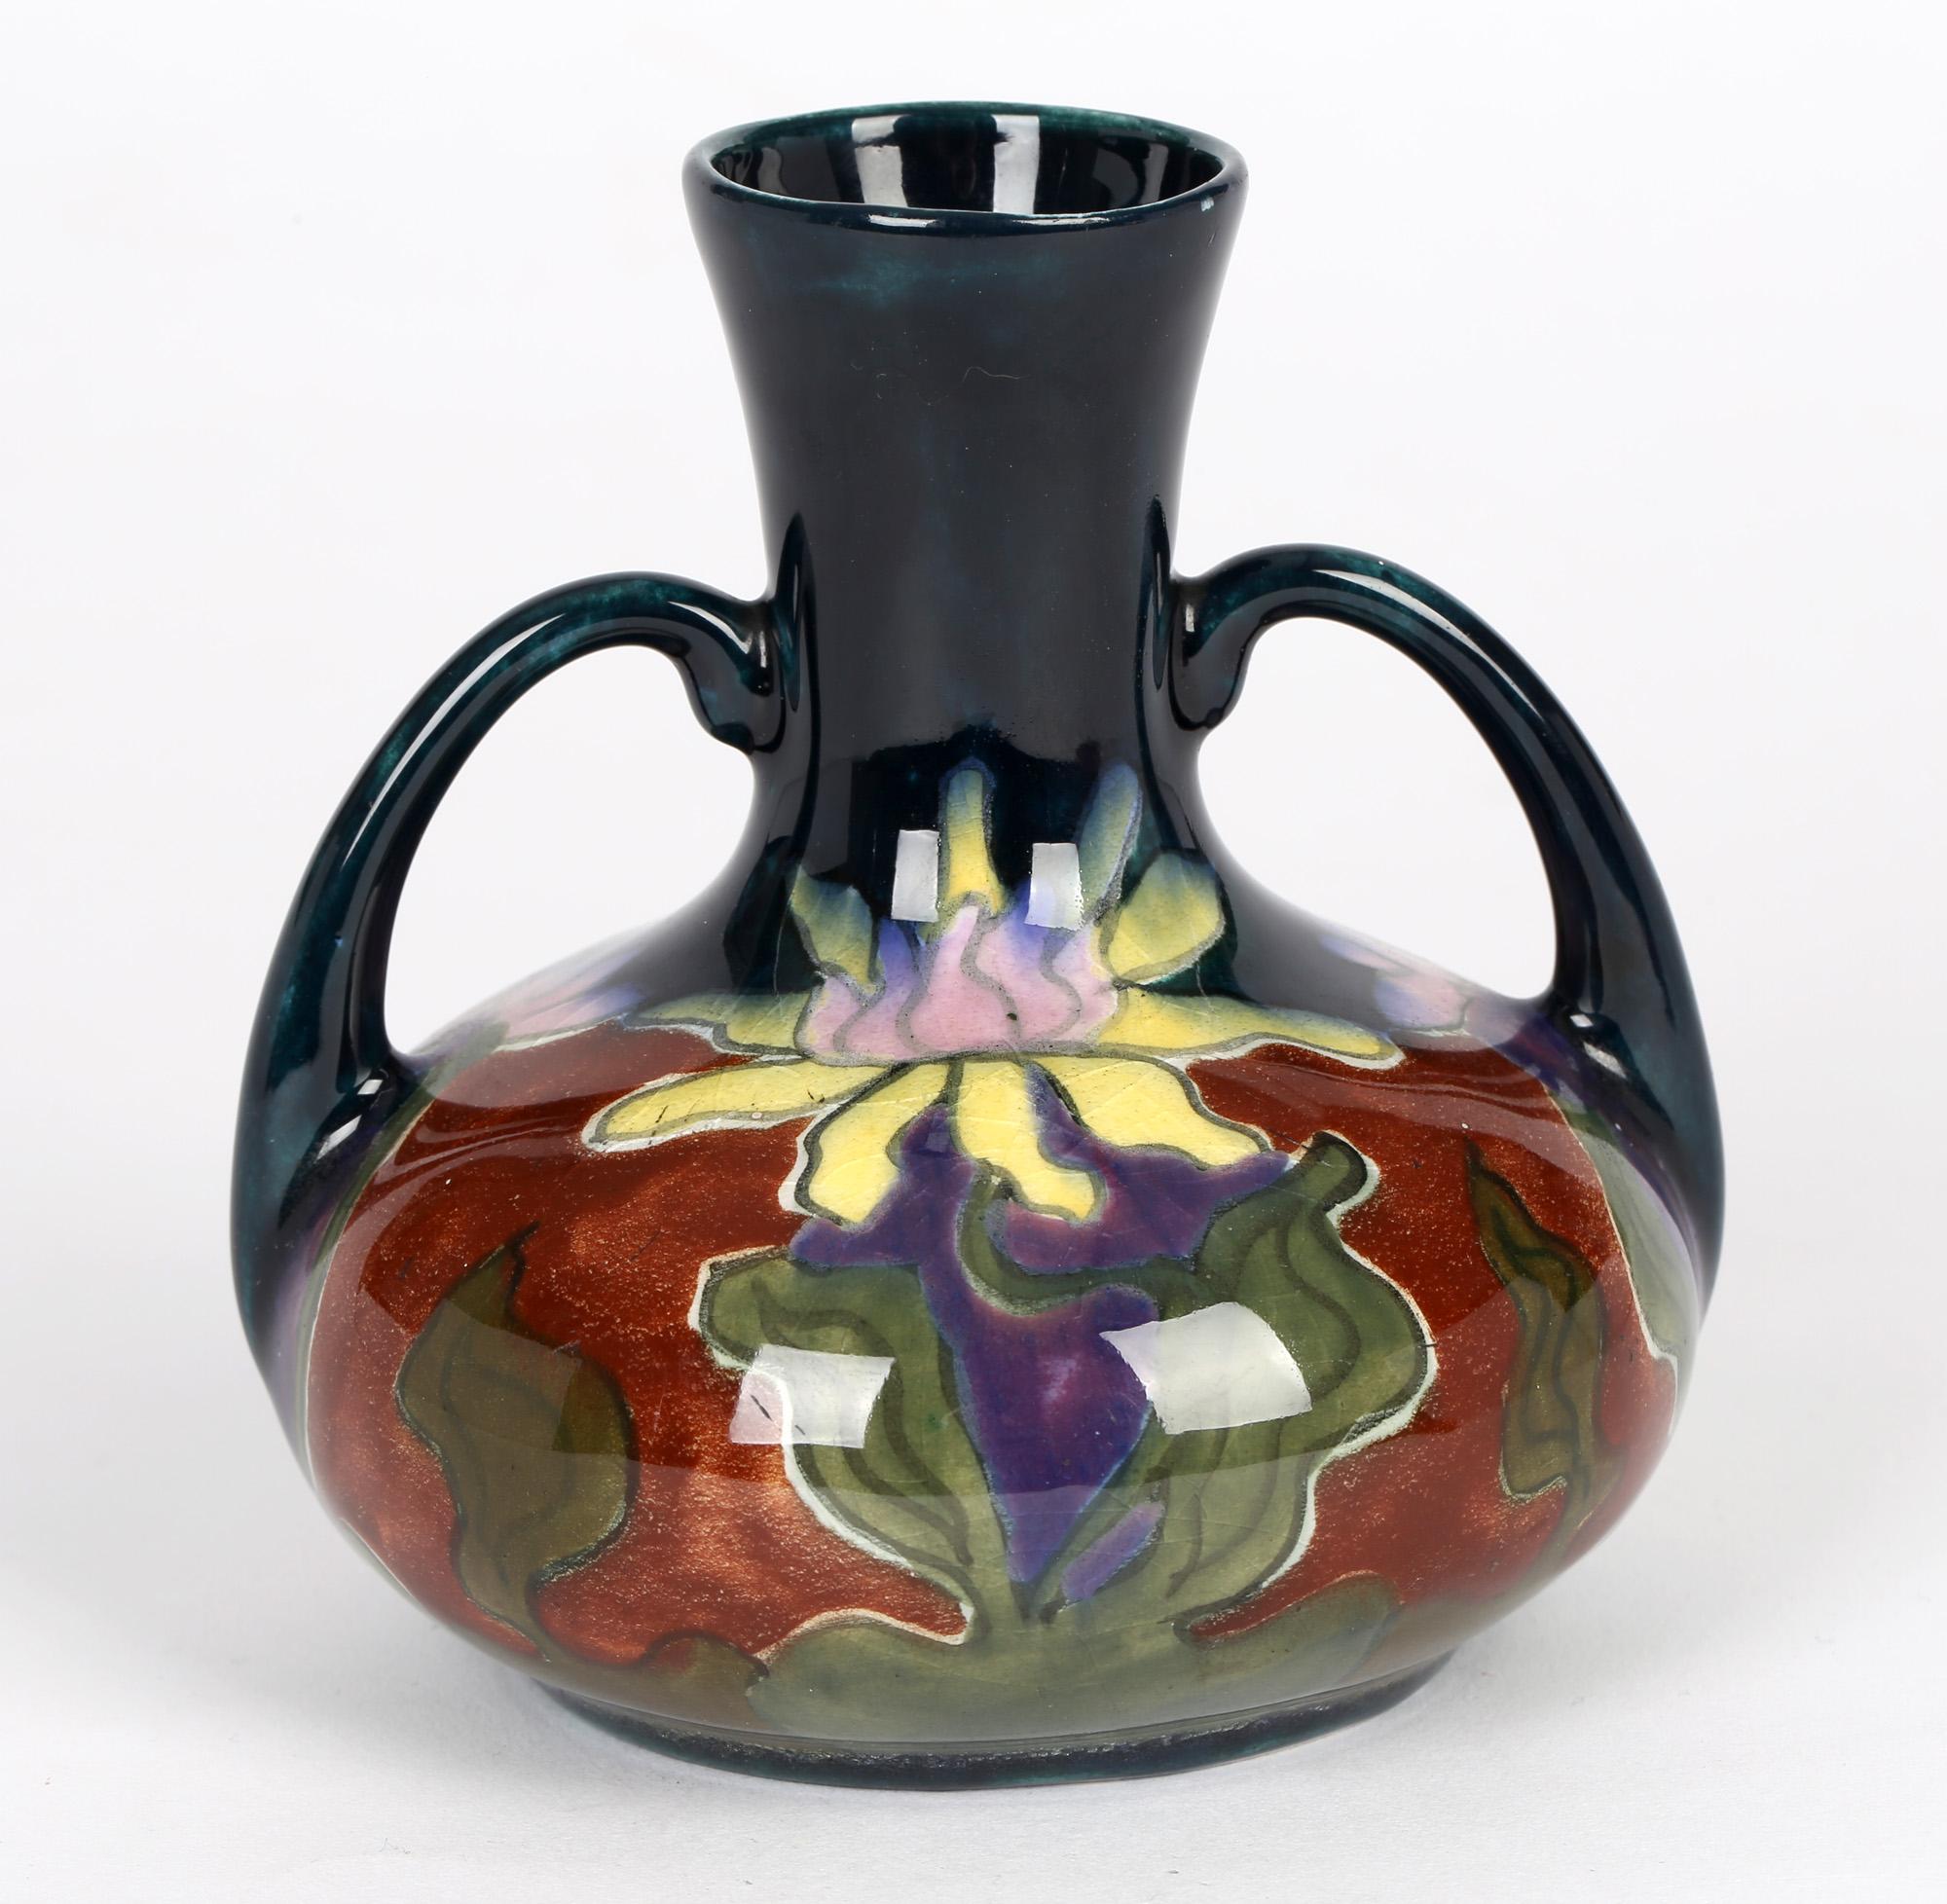 Un élégant vase en poterie d'art autrichienne Art Nouveau à deux anses, peint à la main avec des motifs floraux et fabriqué à la poterie Old Moravian vers 1906. Le vase rond et trapu est légèrement empoté et décoré à la main dans des émaux colorés,